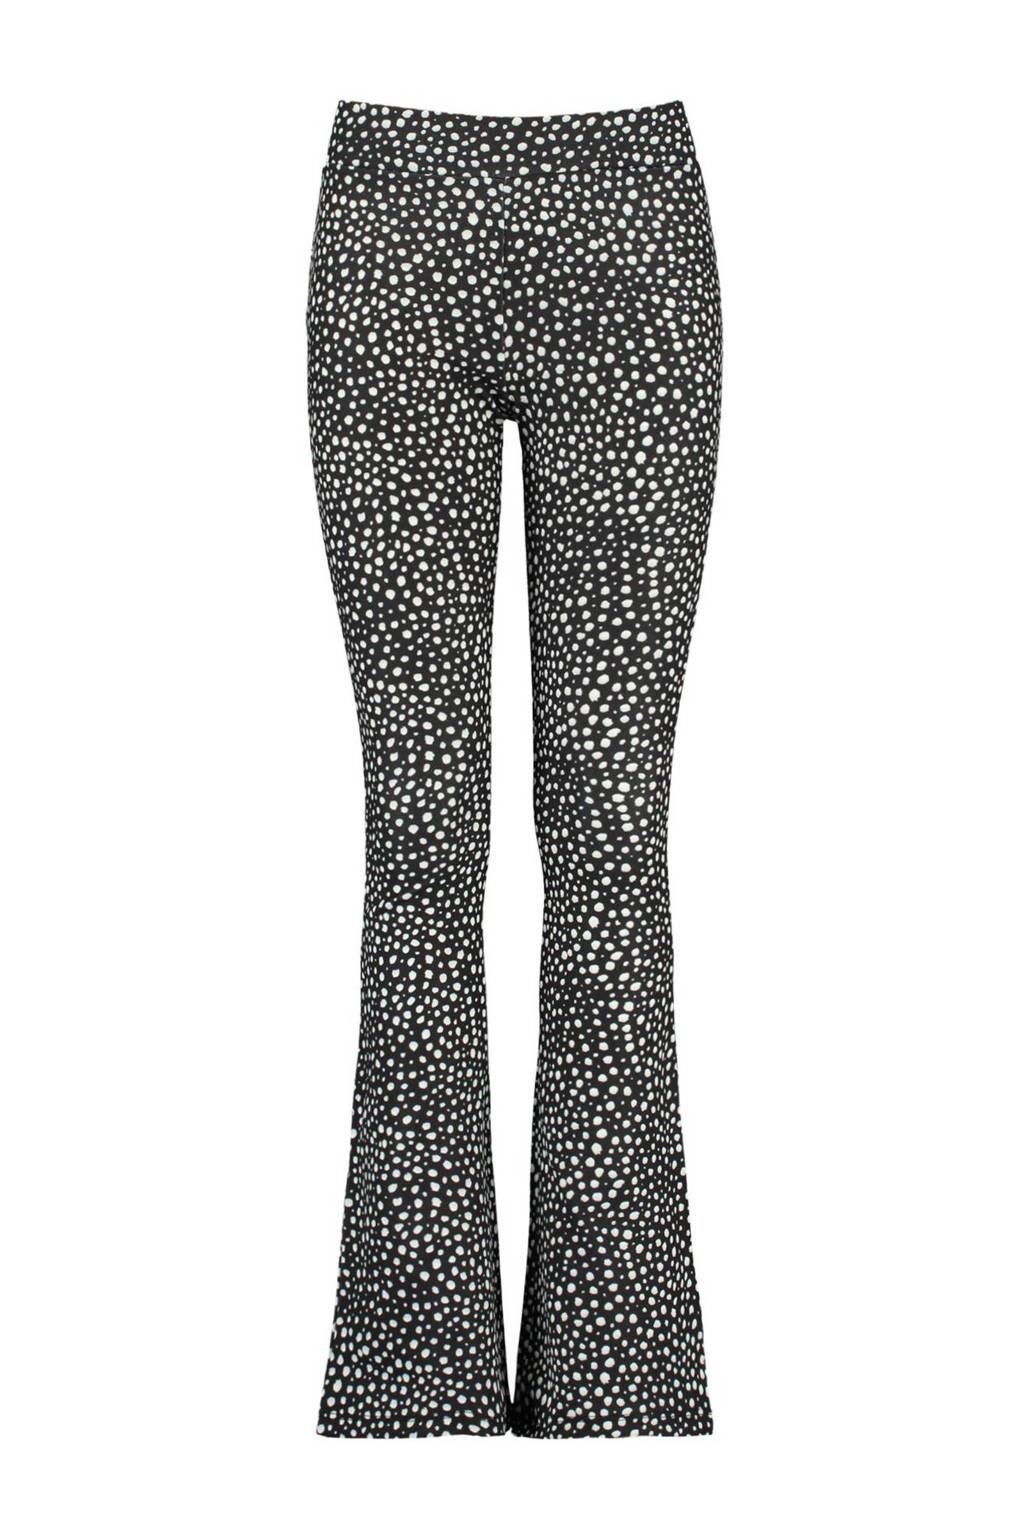 Volg ons Dij Verstelbaar CoolCat Junior flared broek Philou met stippen zwart/wit 34 inch | wehkamp